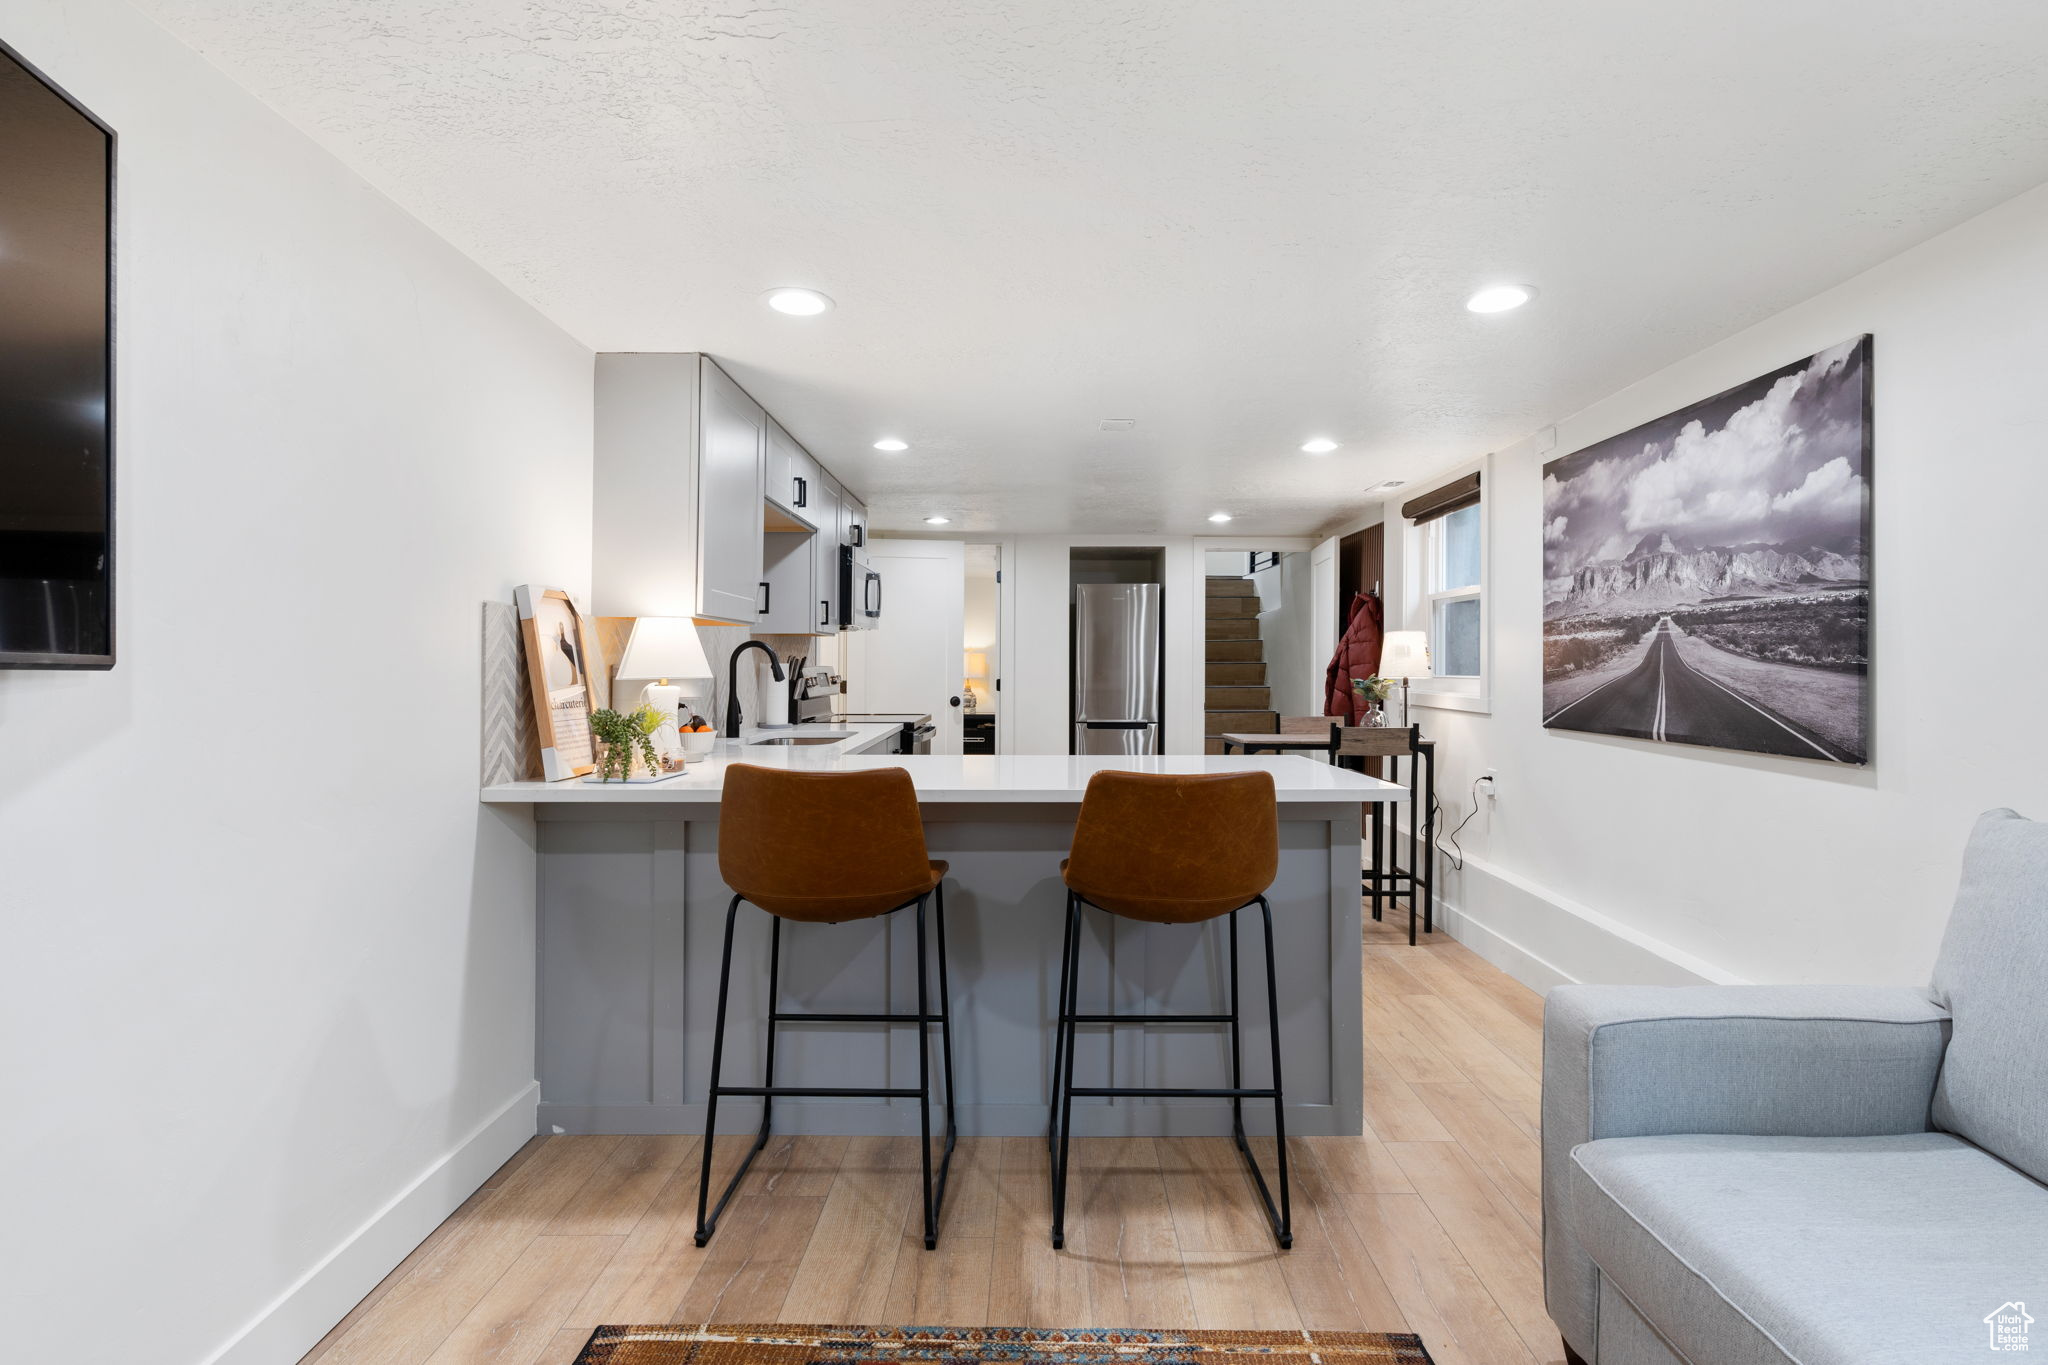 Kitchen featuring a kitchen breakfast bar, kitchen peninsula, light wood-type flooring, and stainless steel fridge